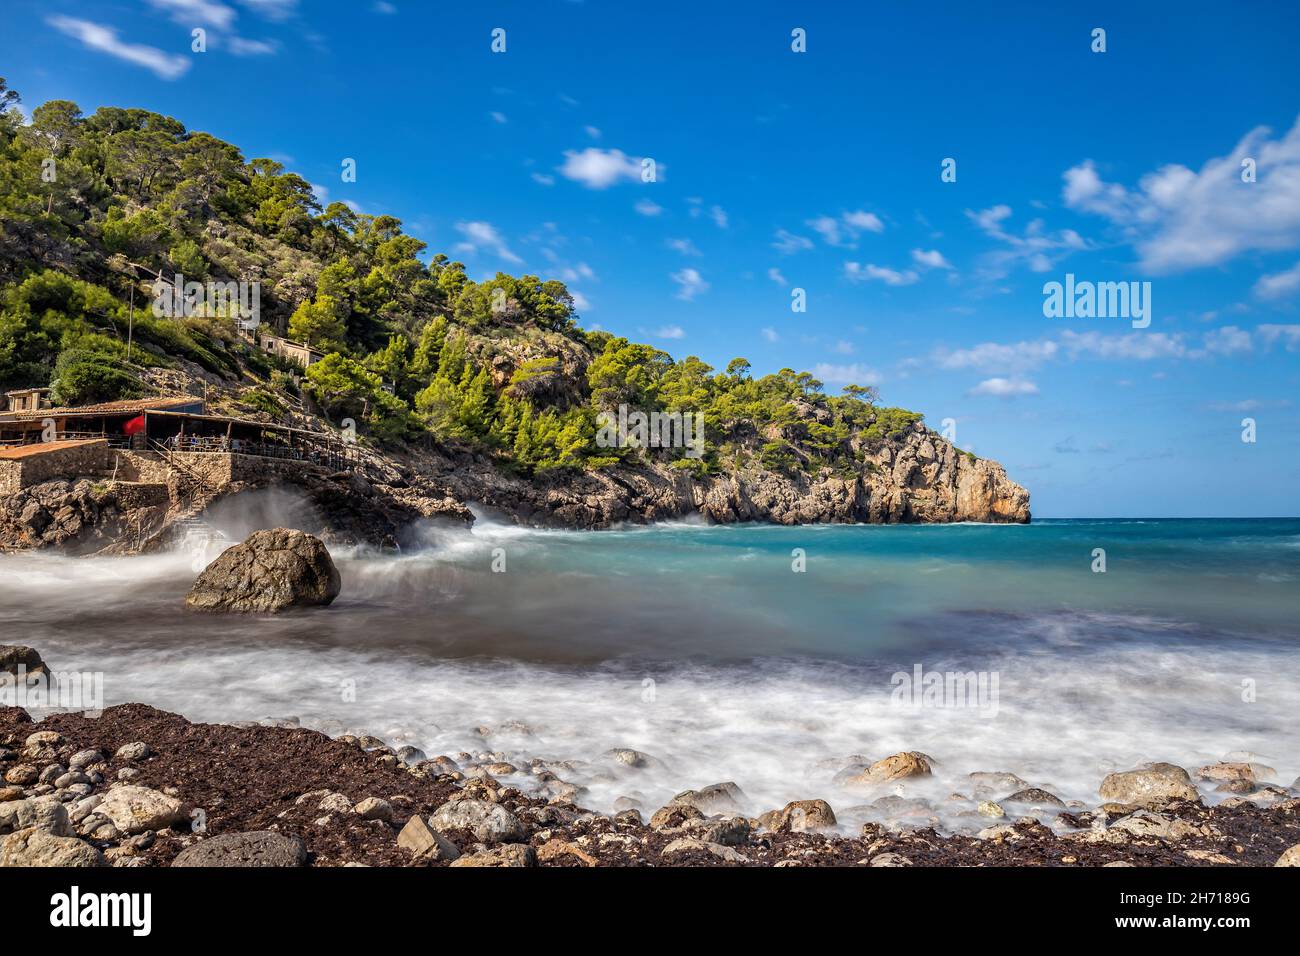 Cala Deià, baia e spiaggia vicino al villaggio Deià, Maiorca, Isole Baleari, Spagna Foto Stock